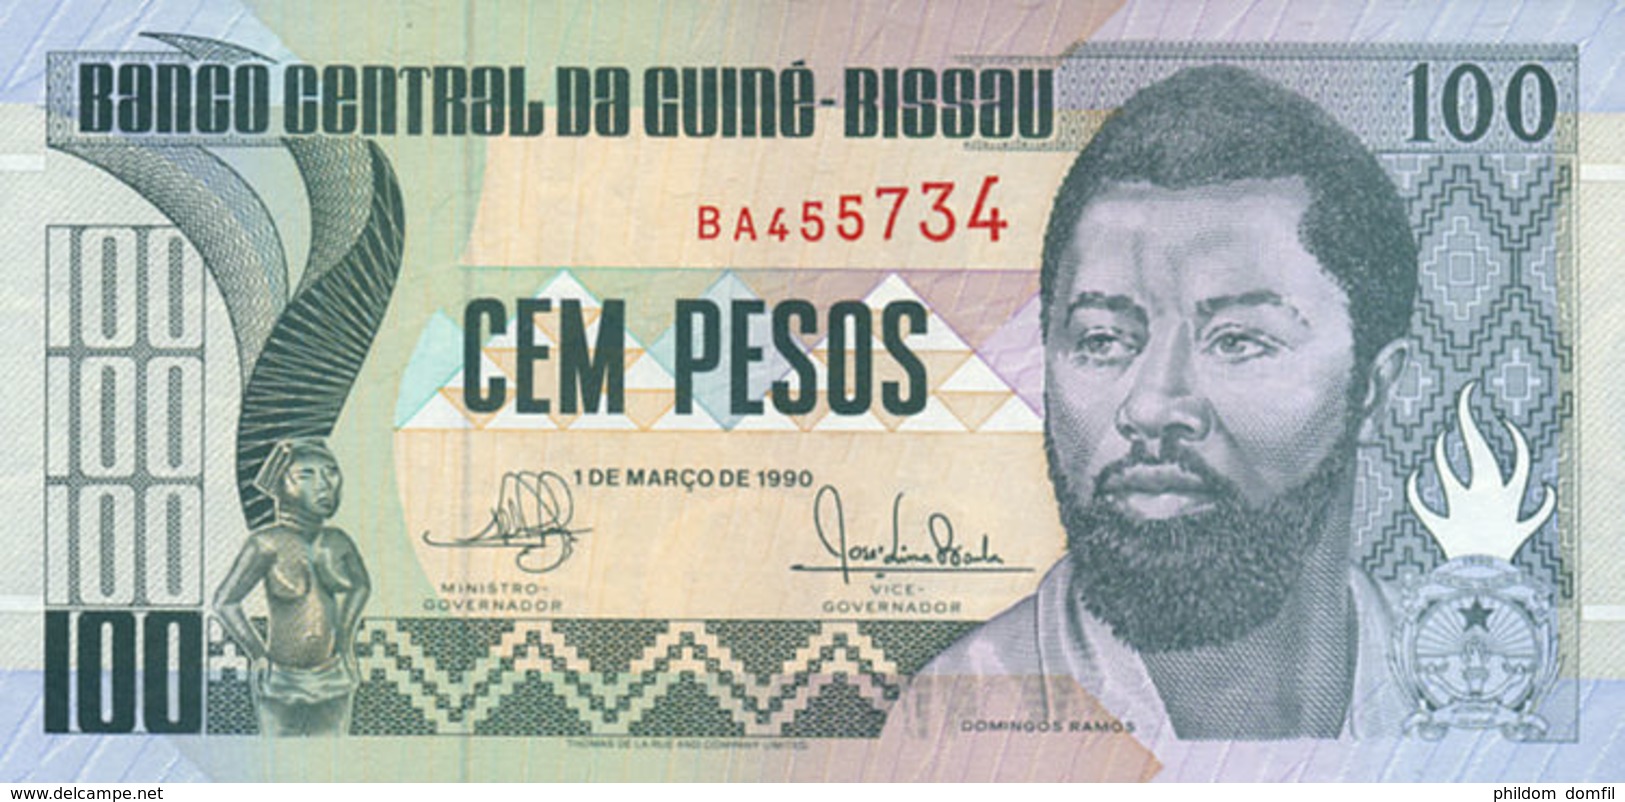 Ref. 553-950 - BIN GUINEA BISSAU . 1990. 100 PESOS CEM GUINEA BISSAU 1990	. 100 PESOS CEM GUINEA BISSAU 1990 - Guinea-Bissau